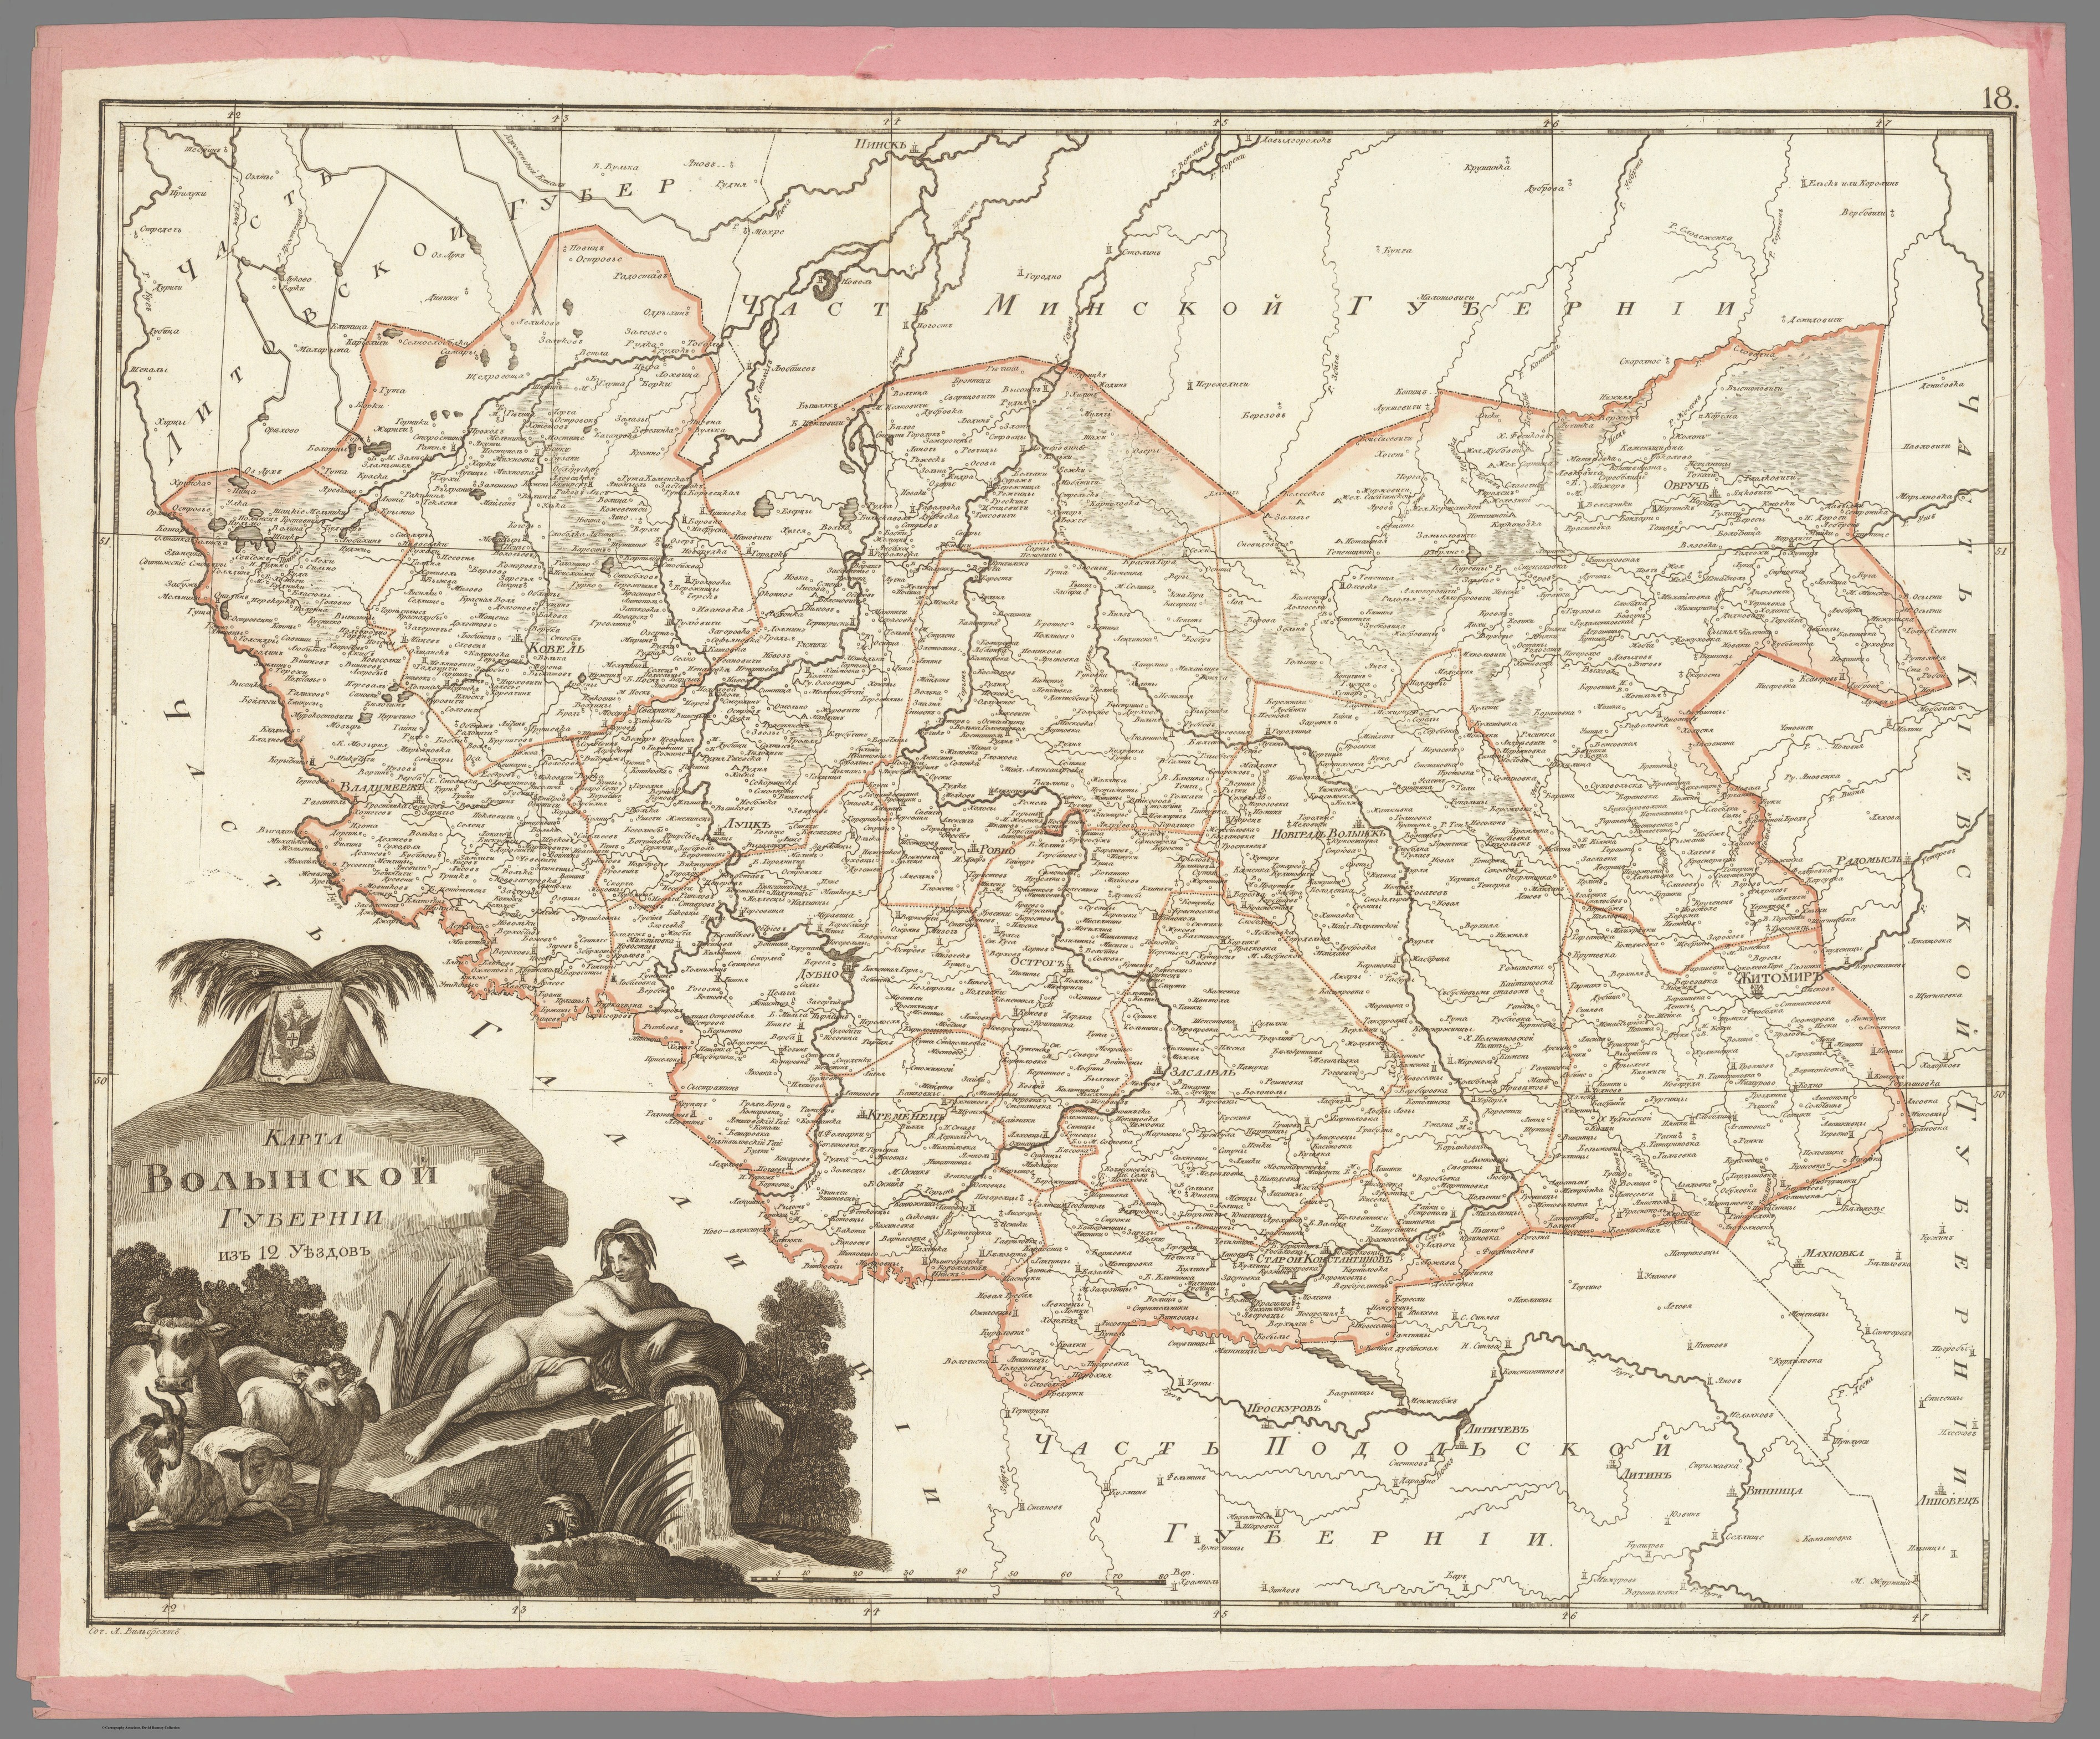 Фото з назвою О. М. Вільбрехт. Карта Волинської губернії з 12 повітів.1800 р.